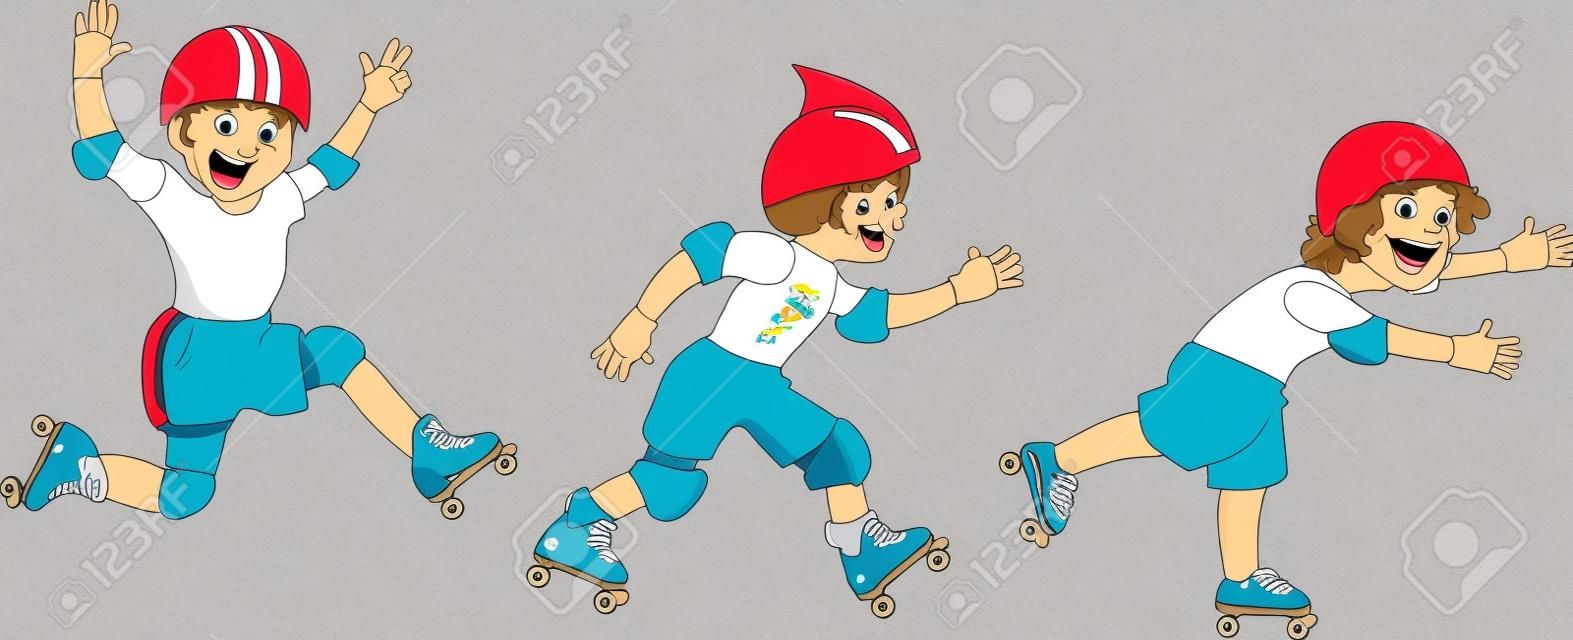 Tres pequeños personajes de dibujos animados los niños de patinaje sobre ruedas, aislado en blanco